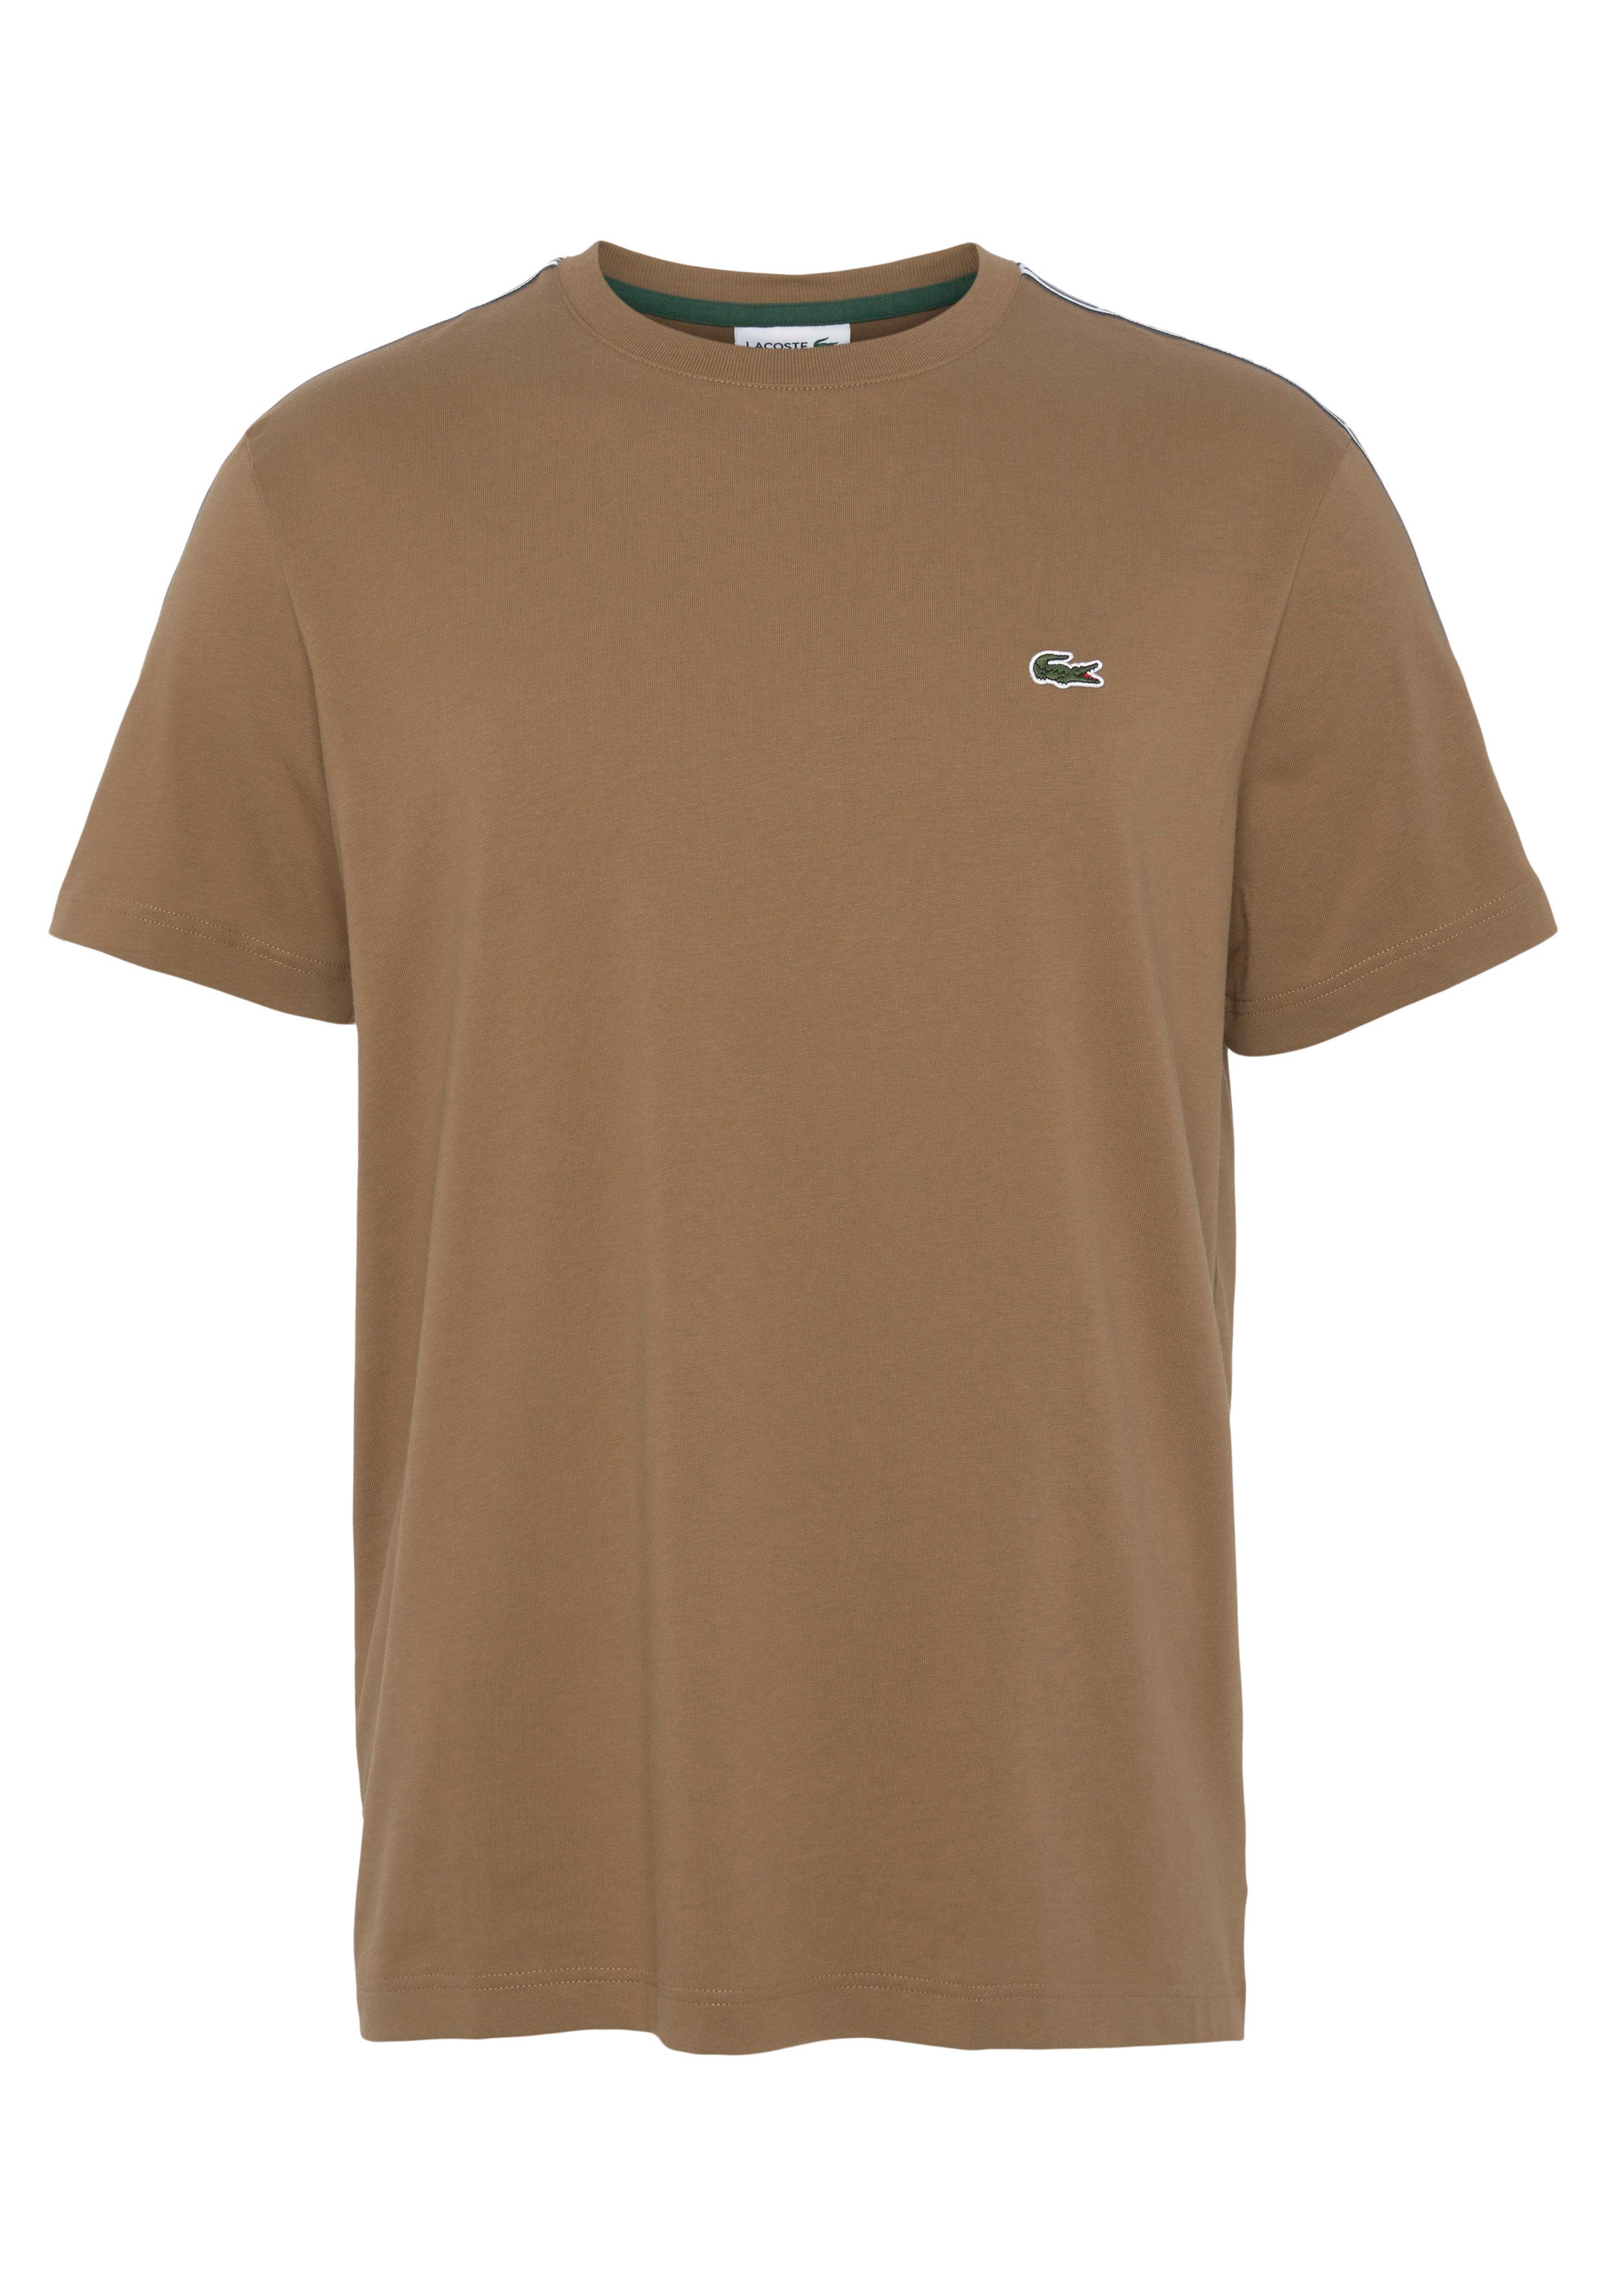 Lacoste T-Shirt mit beschriftetem Kontrastband an den Schultern braun | 